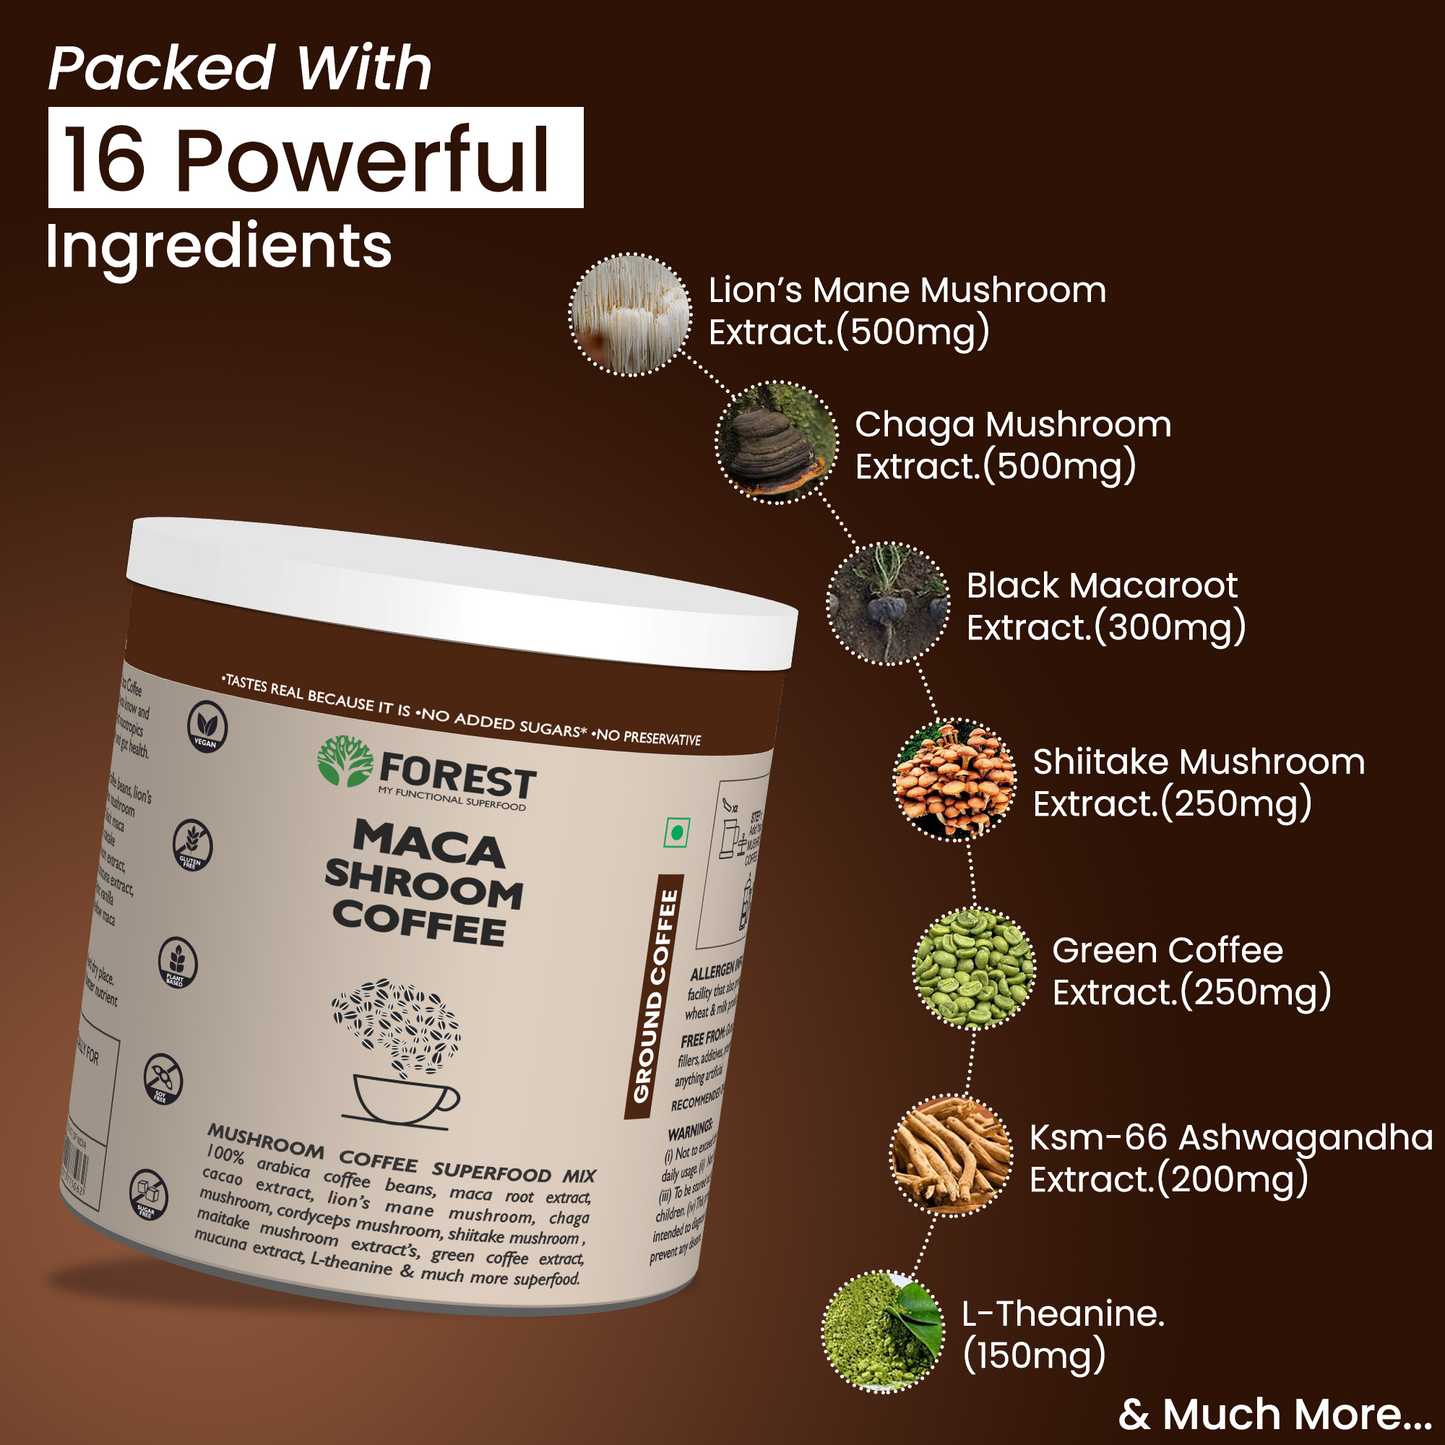 Maca Shroom Coffee - 100% Natural Coffee Powder